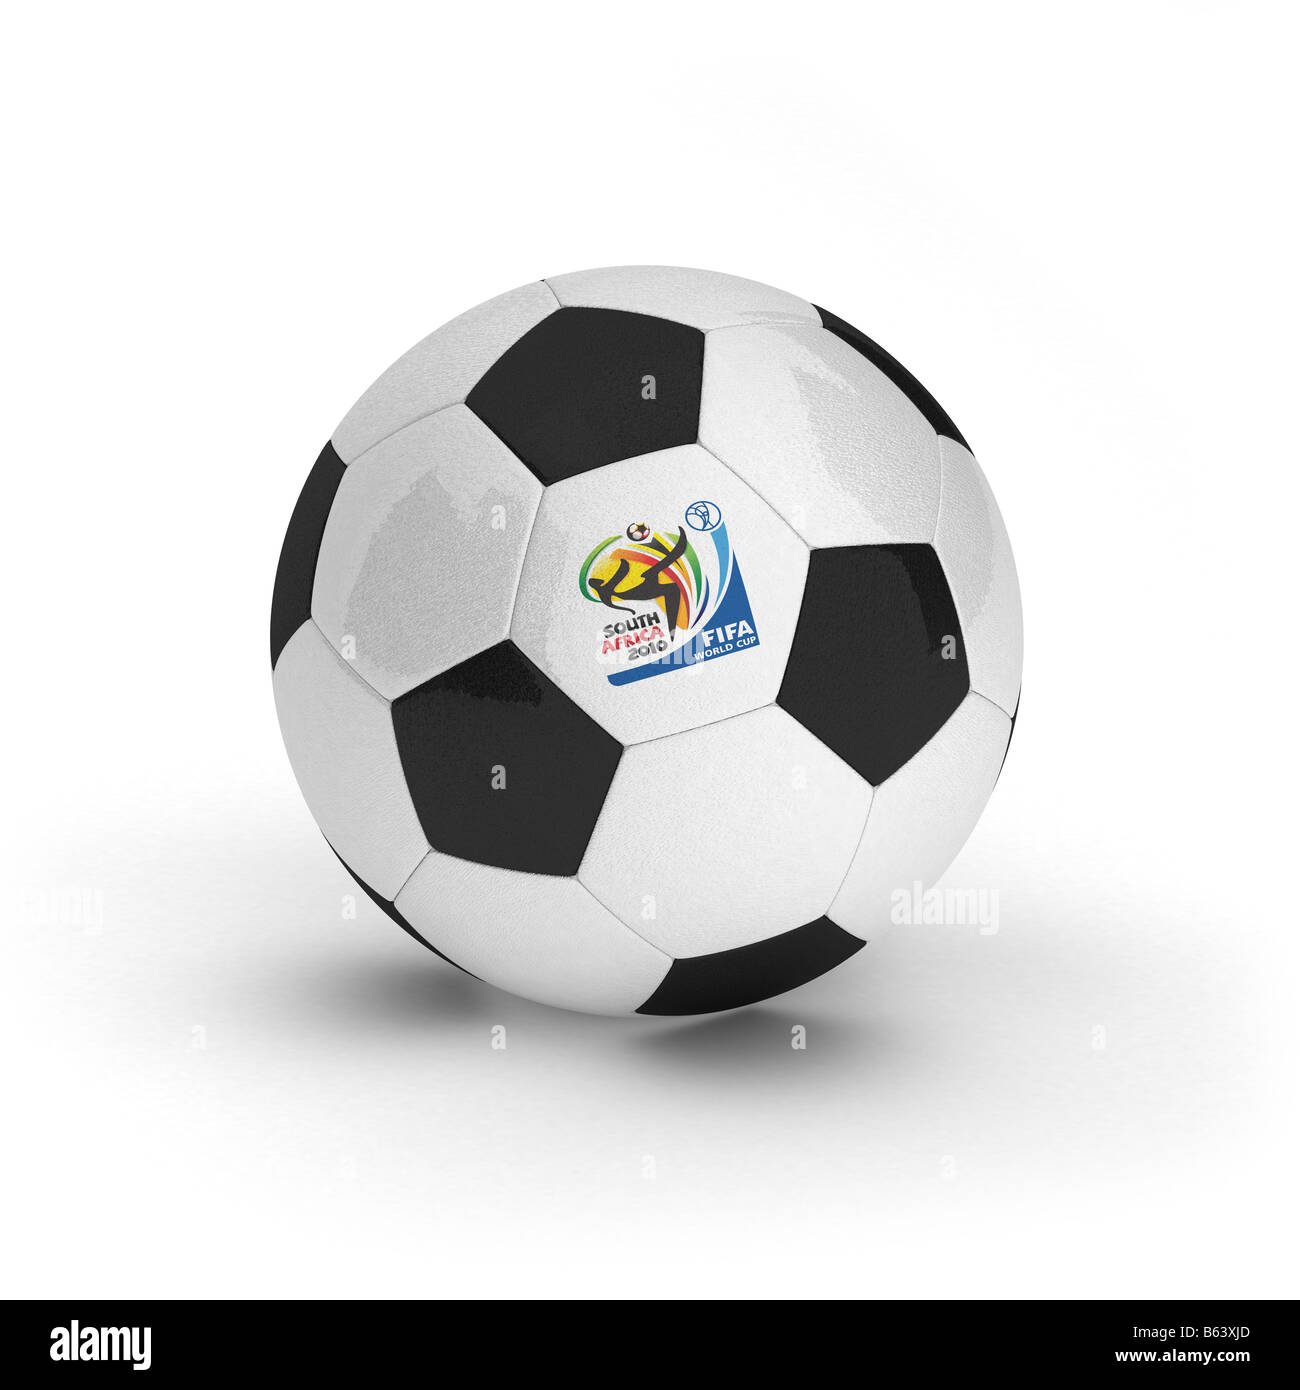 Mondiali 2010 immagini e fotografie stock ad alta risoluzione - Alamy